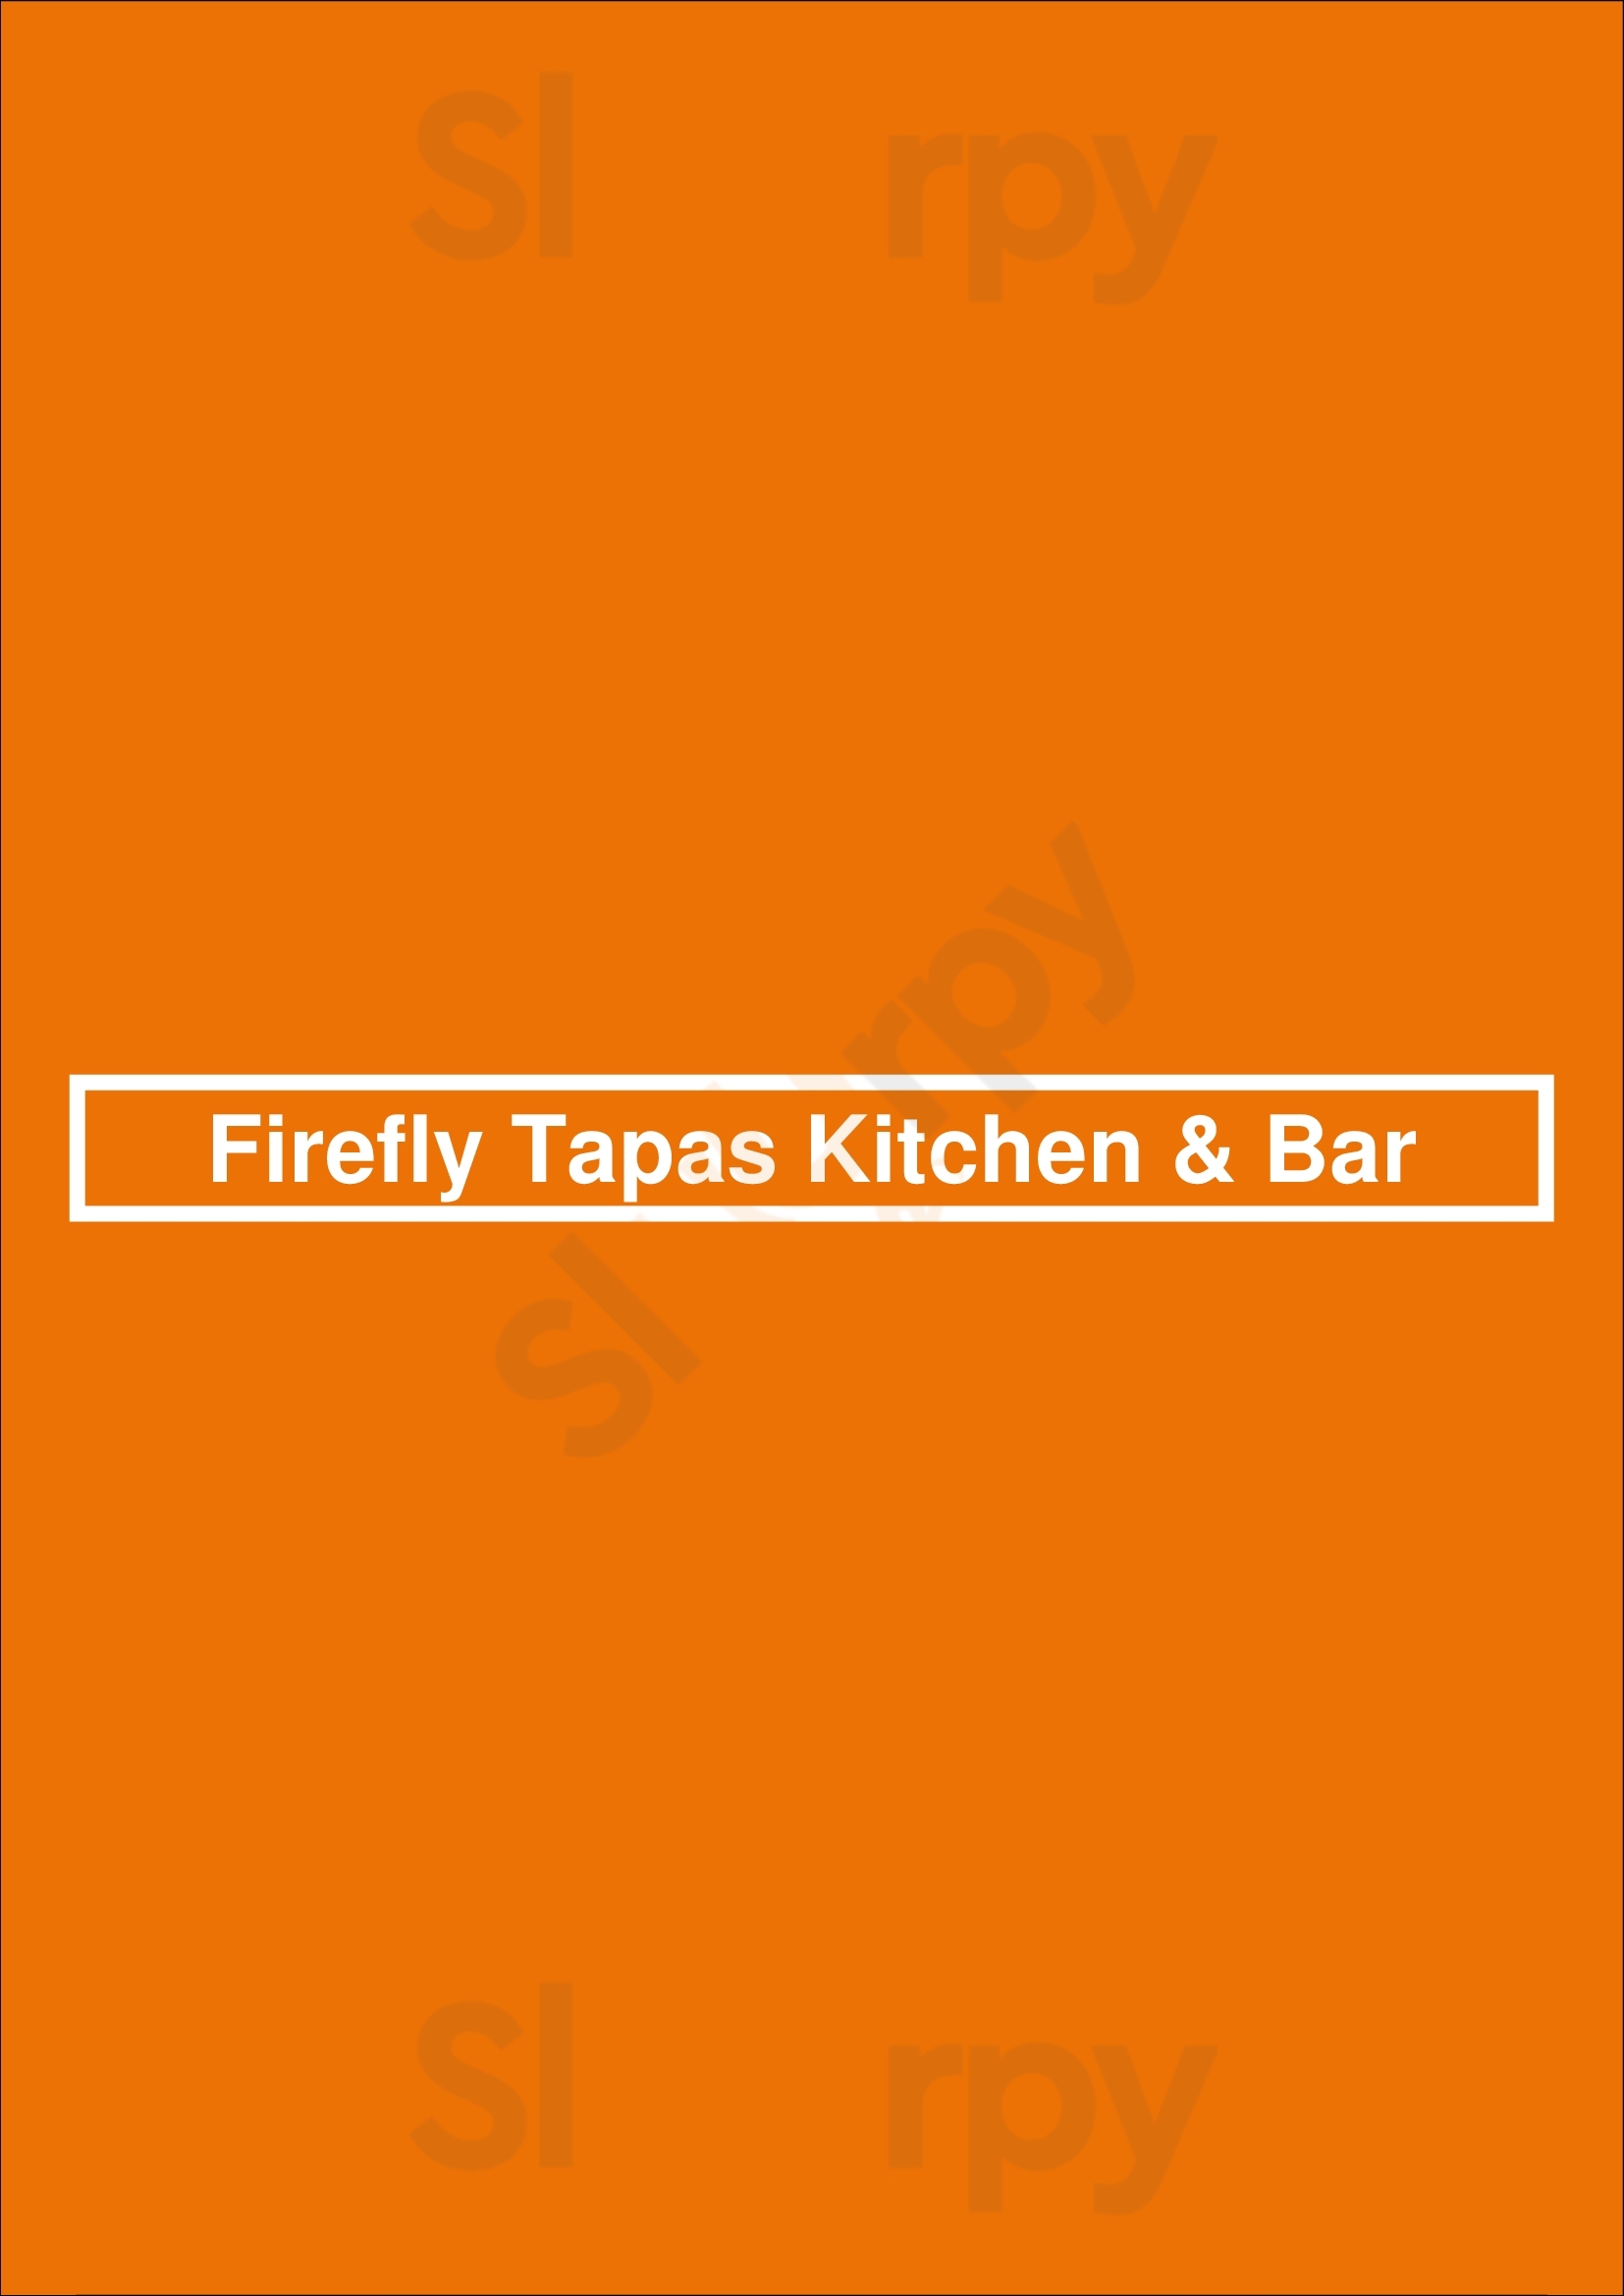 Firefly Tapas Kitchen & Bar Las Vegas Menu - 1